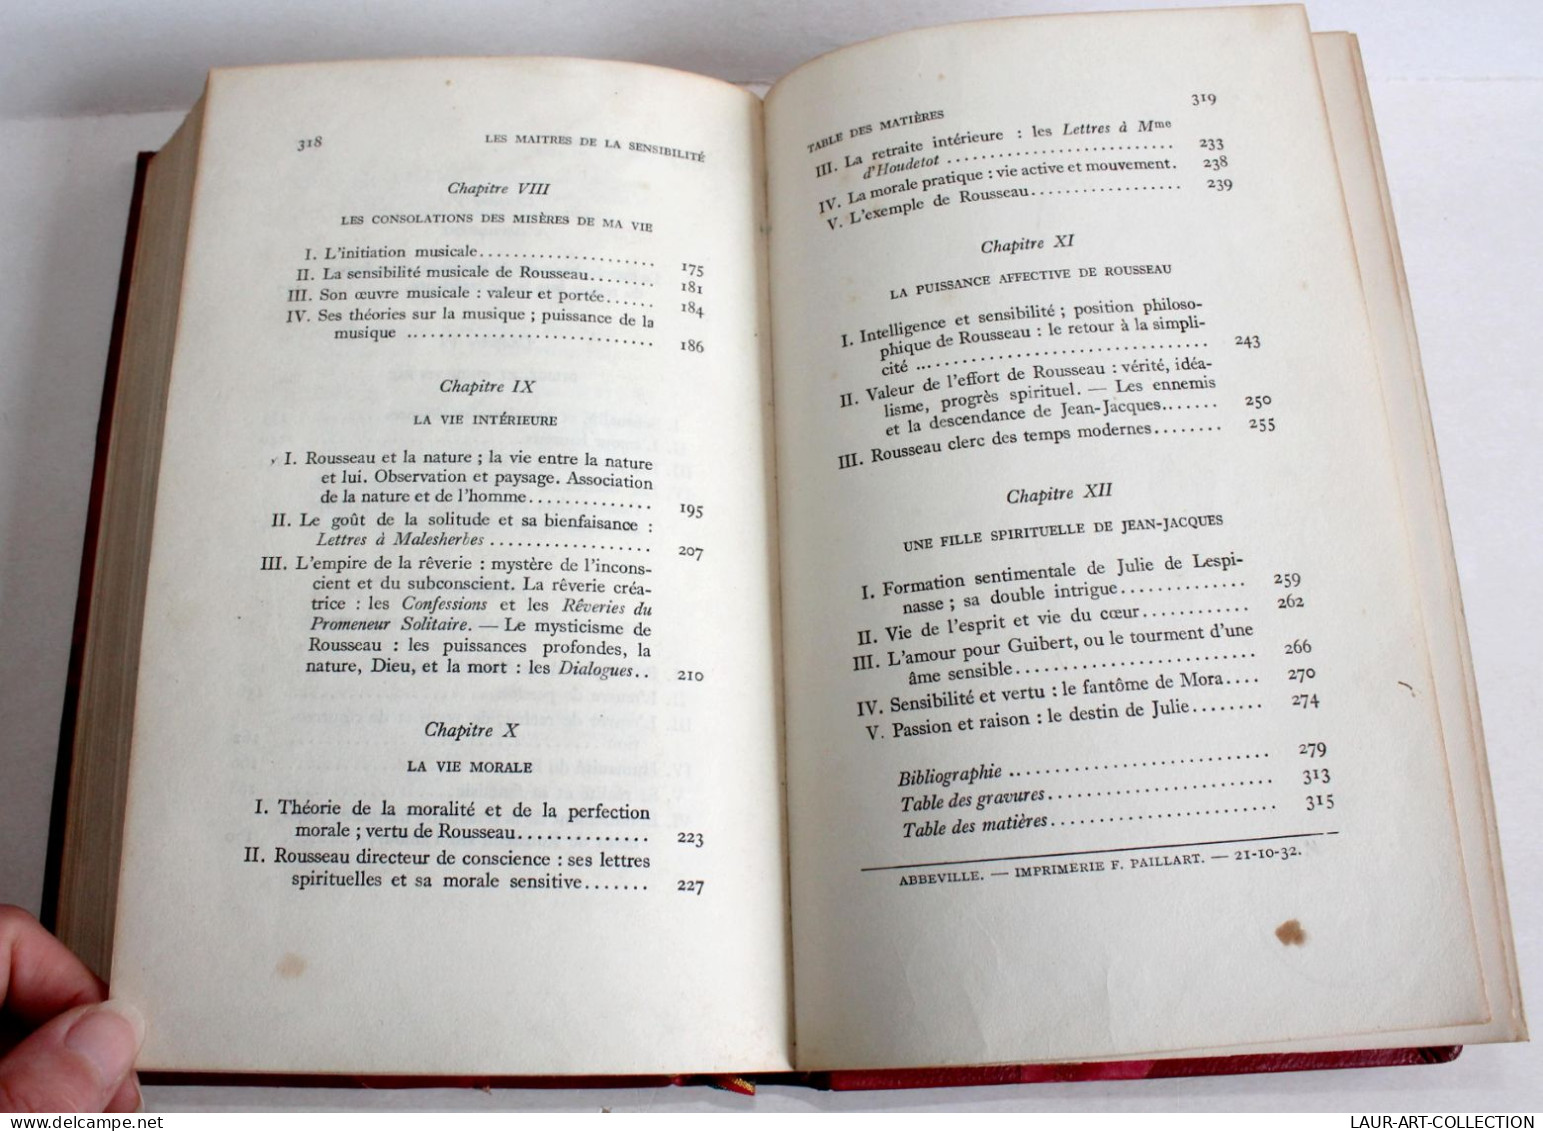 LES MAITRES DE LA SENSIBILITE FRANCAISE AU XVIIIe SIECLE par PIERRE TRAHARD 1932 / LIVRE ANCIEN XXe SIECLE (1803.251)